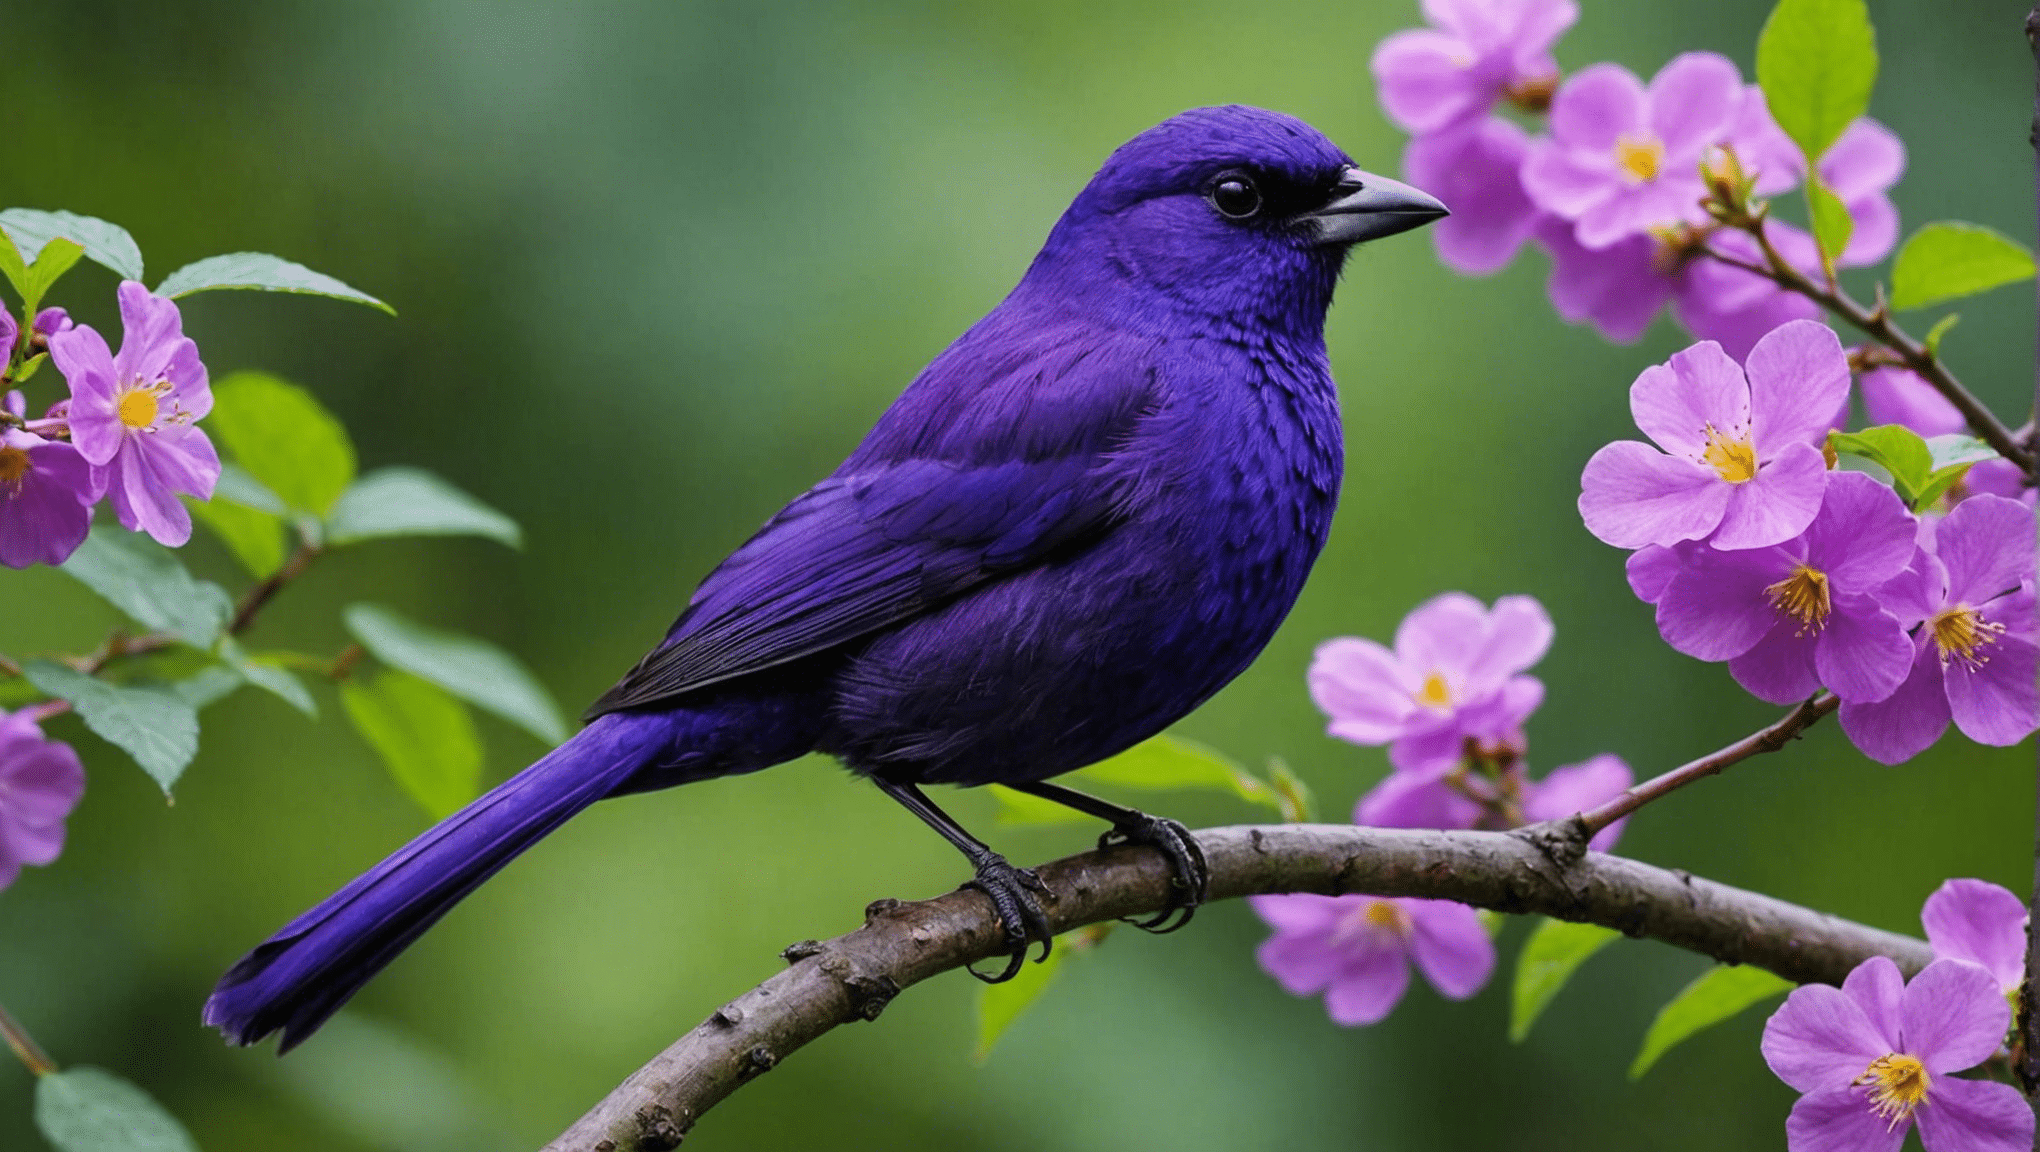 zjistěte, zda jsou fialoví ptáci vzácní v tomto informativním článku o ptačích druzích a jejich jedinečném zbarvení.